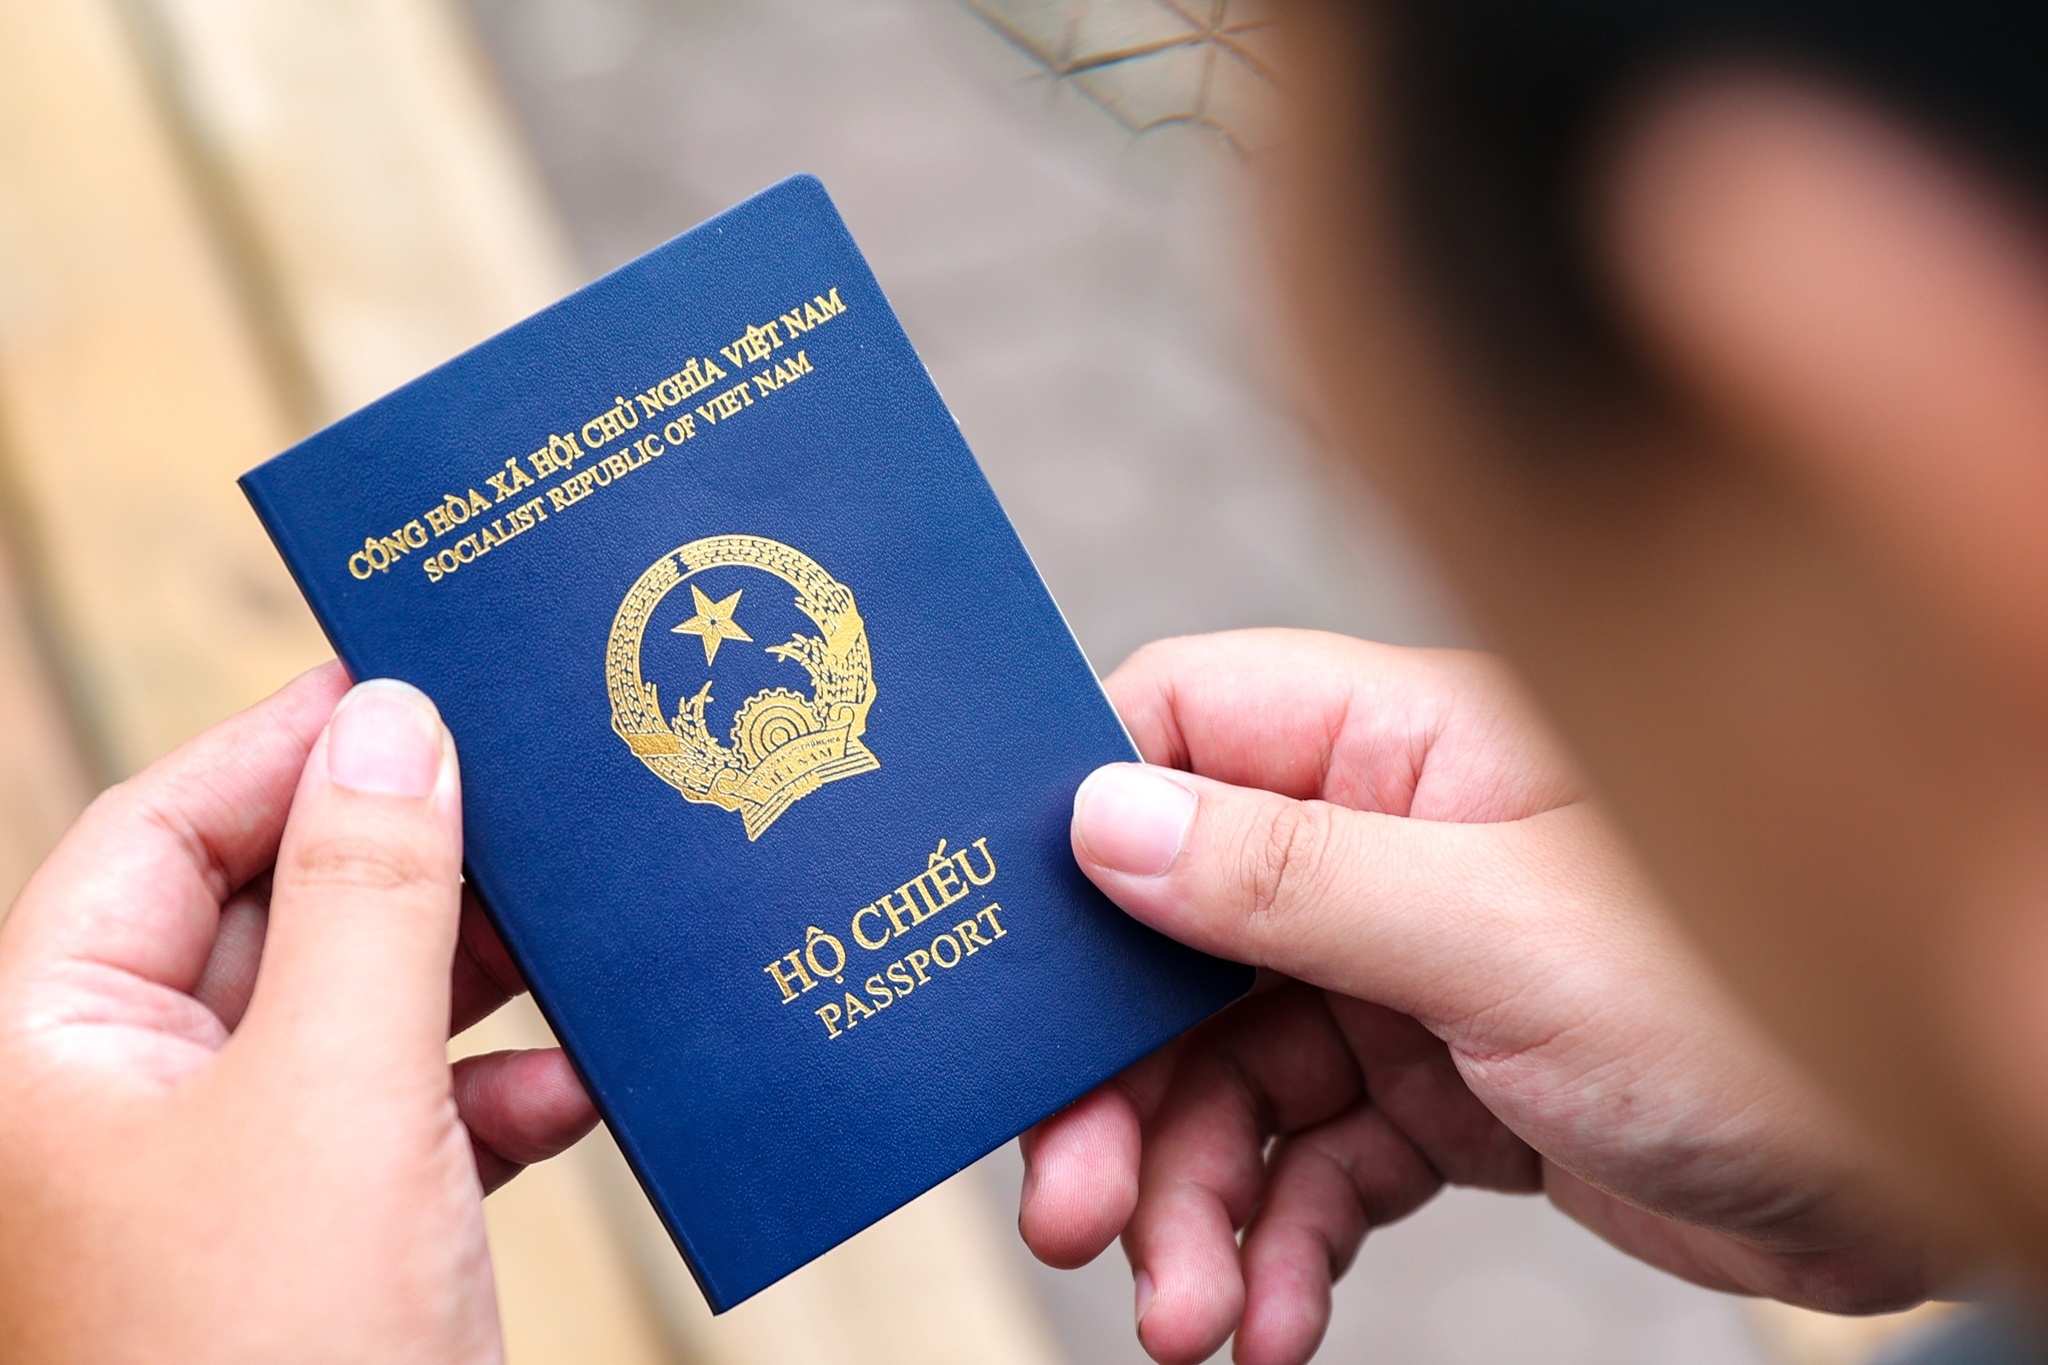 Chụp ảnh hộ chiếu là bước quan trọng để đảm bảo thông tin cá nhân chính xác trên hộ chiếu của bạn. Hãy đến với chúng tôi để có một bức ảnh đẹp và sắc nét cho hộ chiếu của bạn.